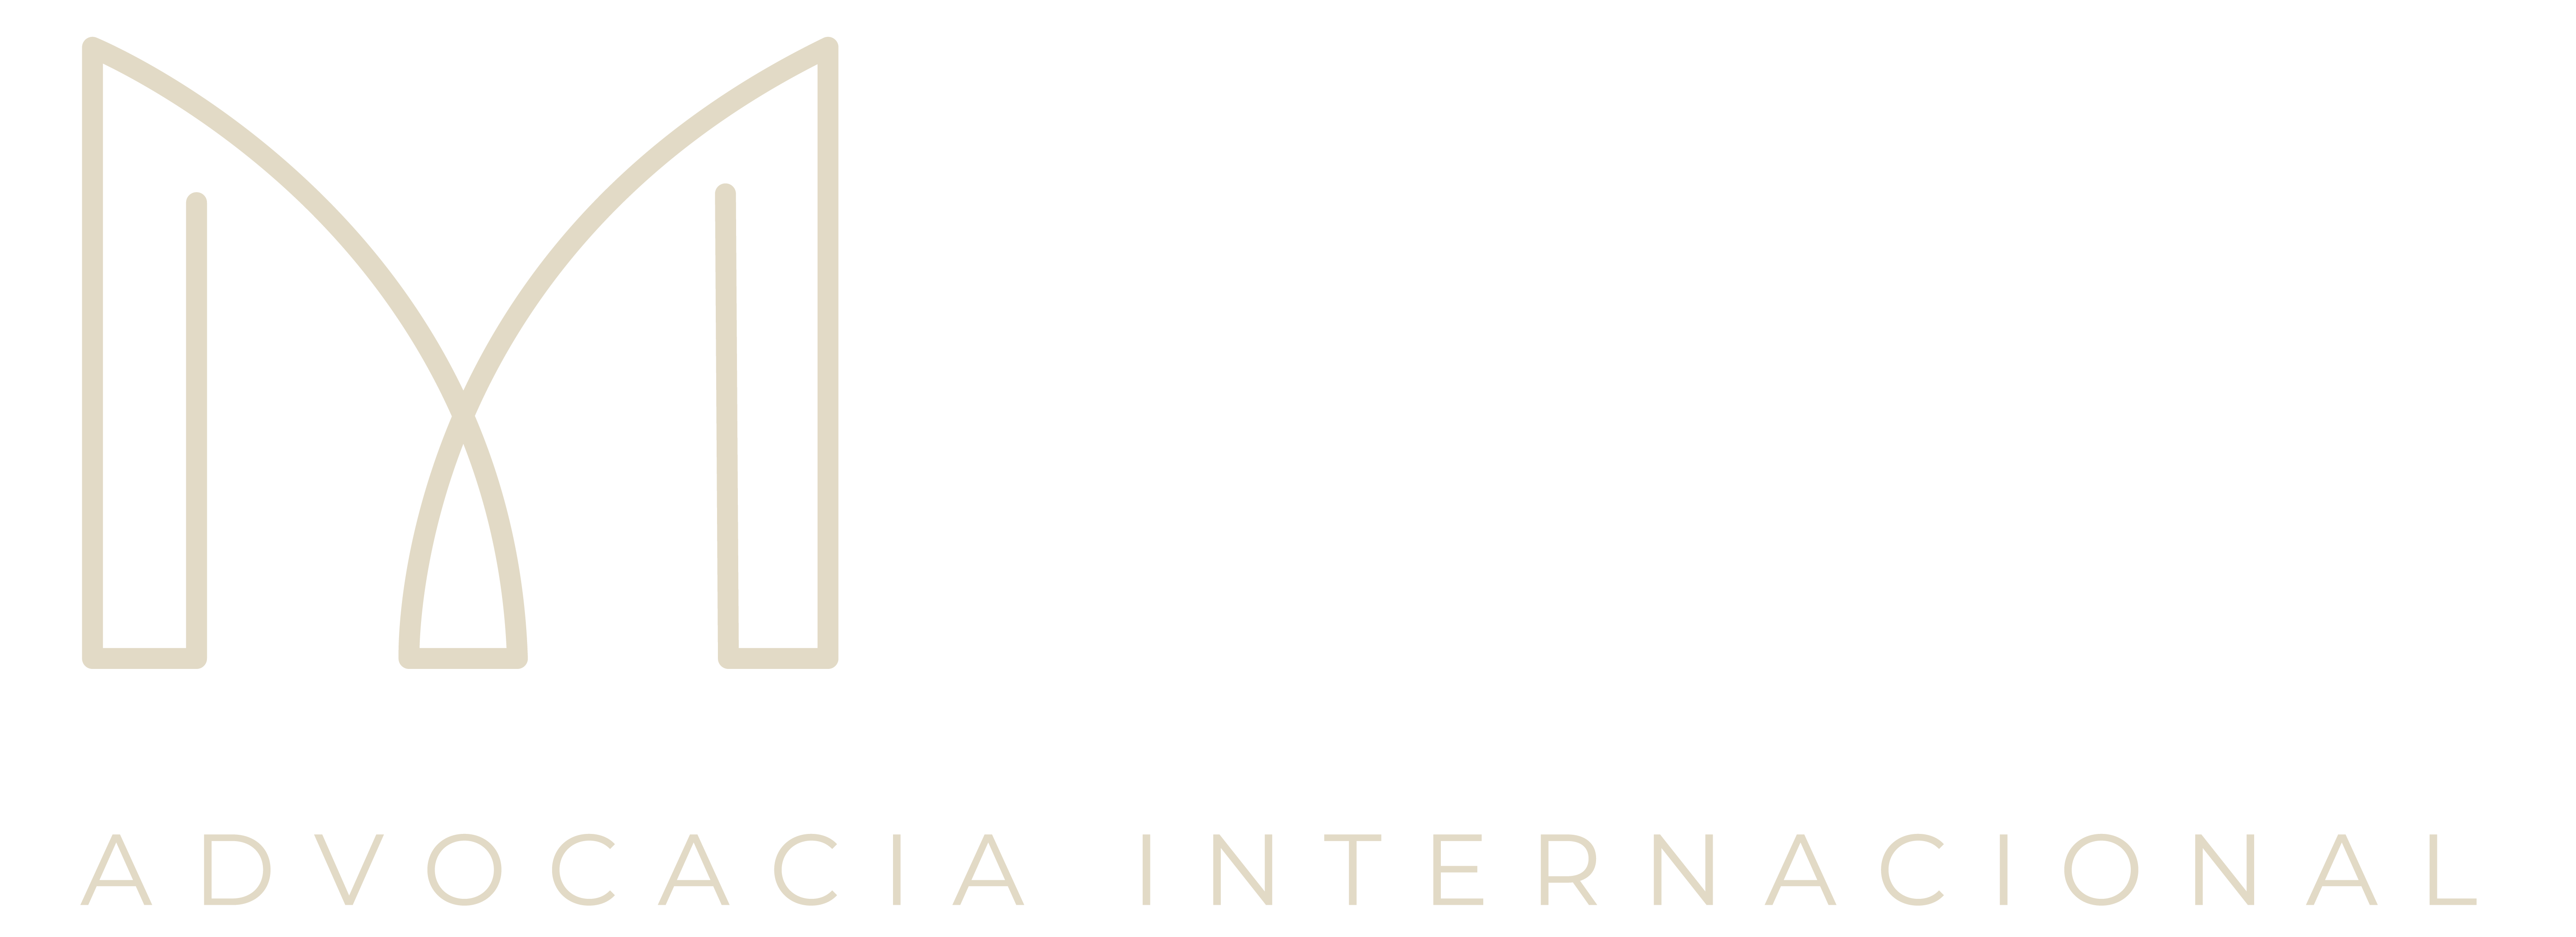 Mariah Figueira Advocacia Internacional}